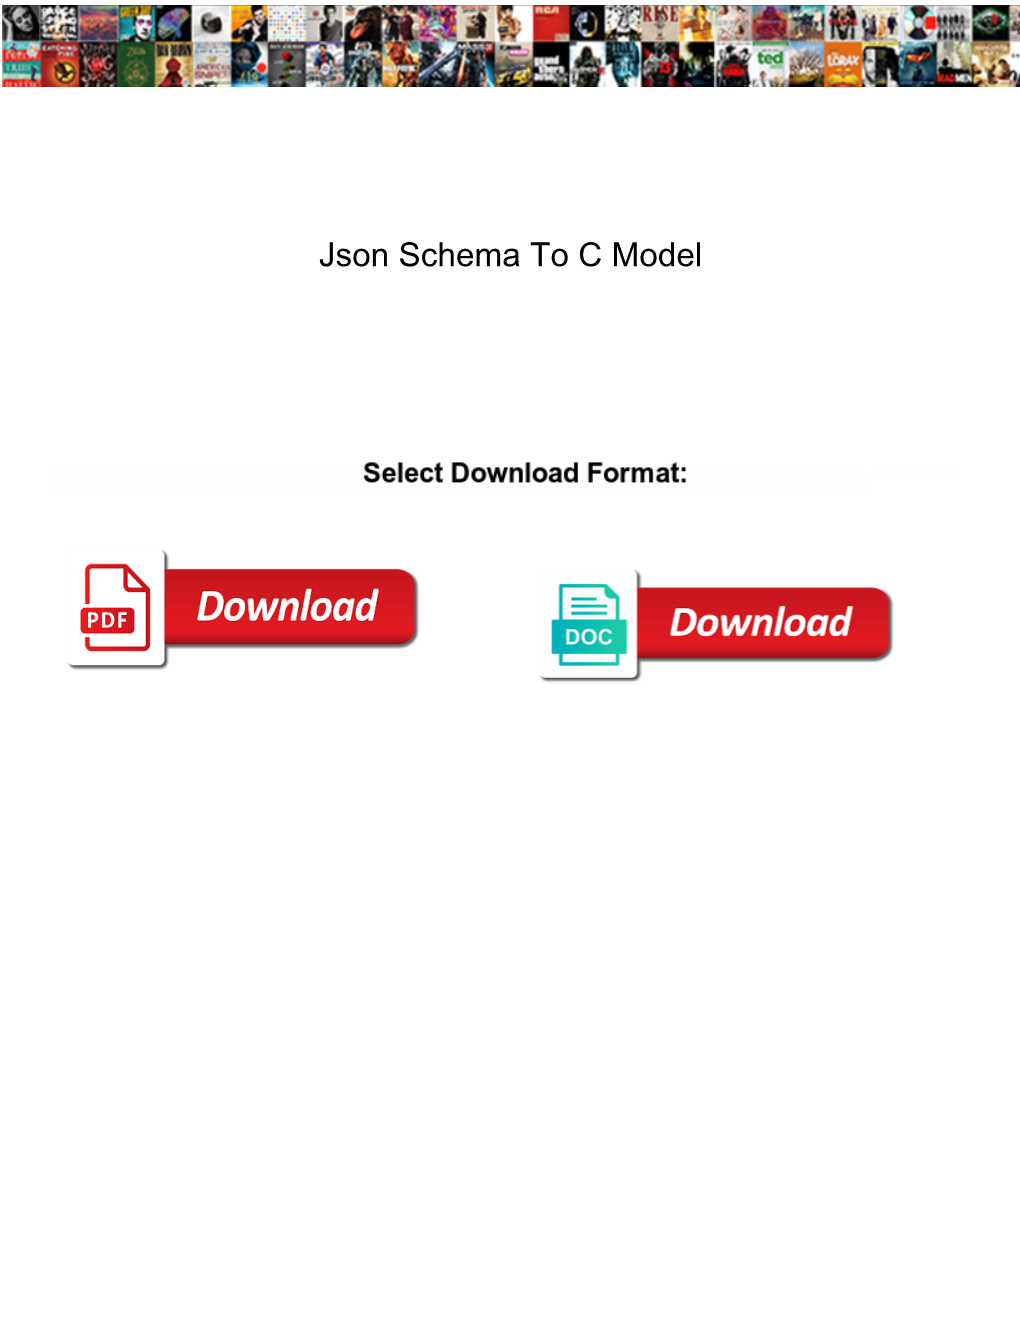 Json Schema to C Model